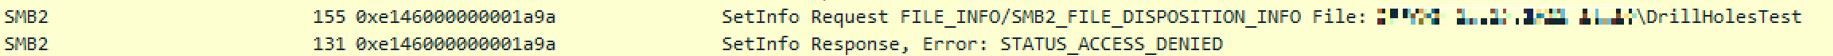 CommVault无法将CIFS共享识别为具有稀疏文件支持